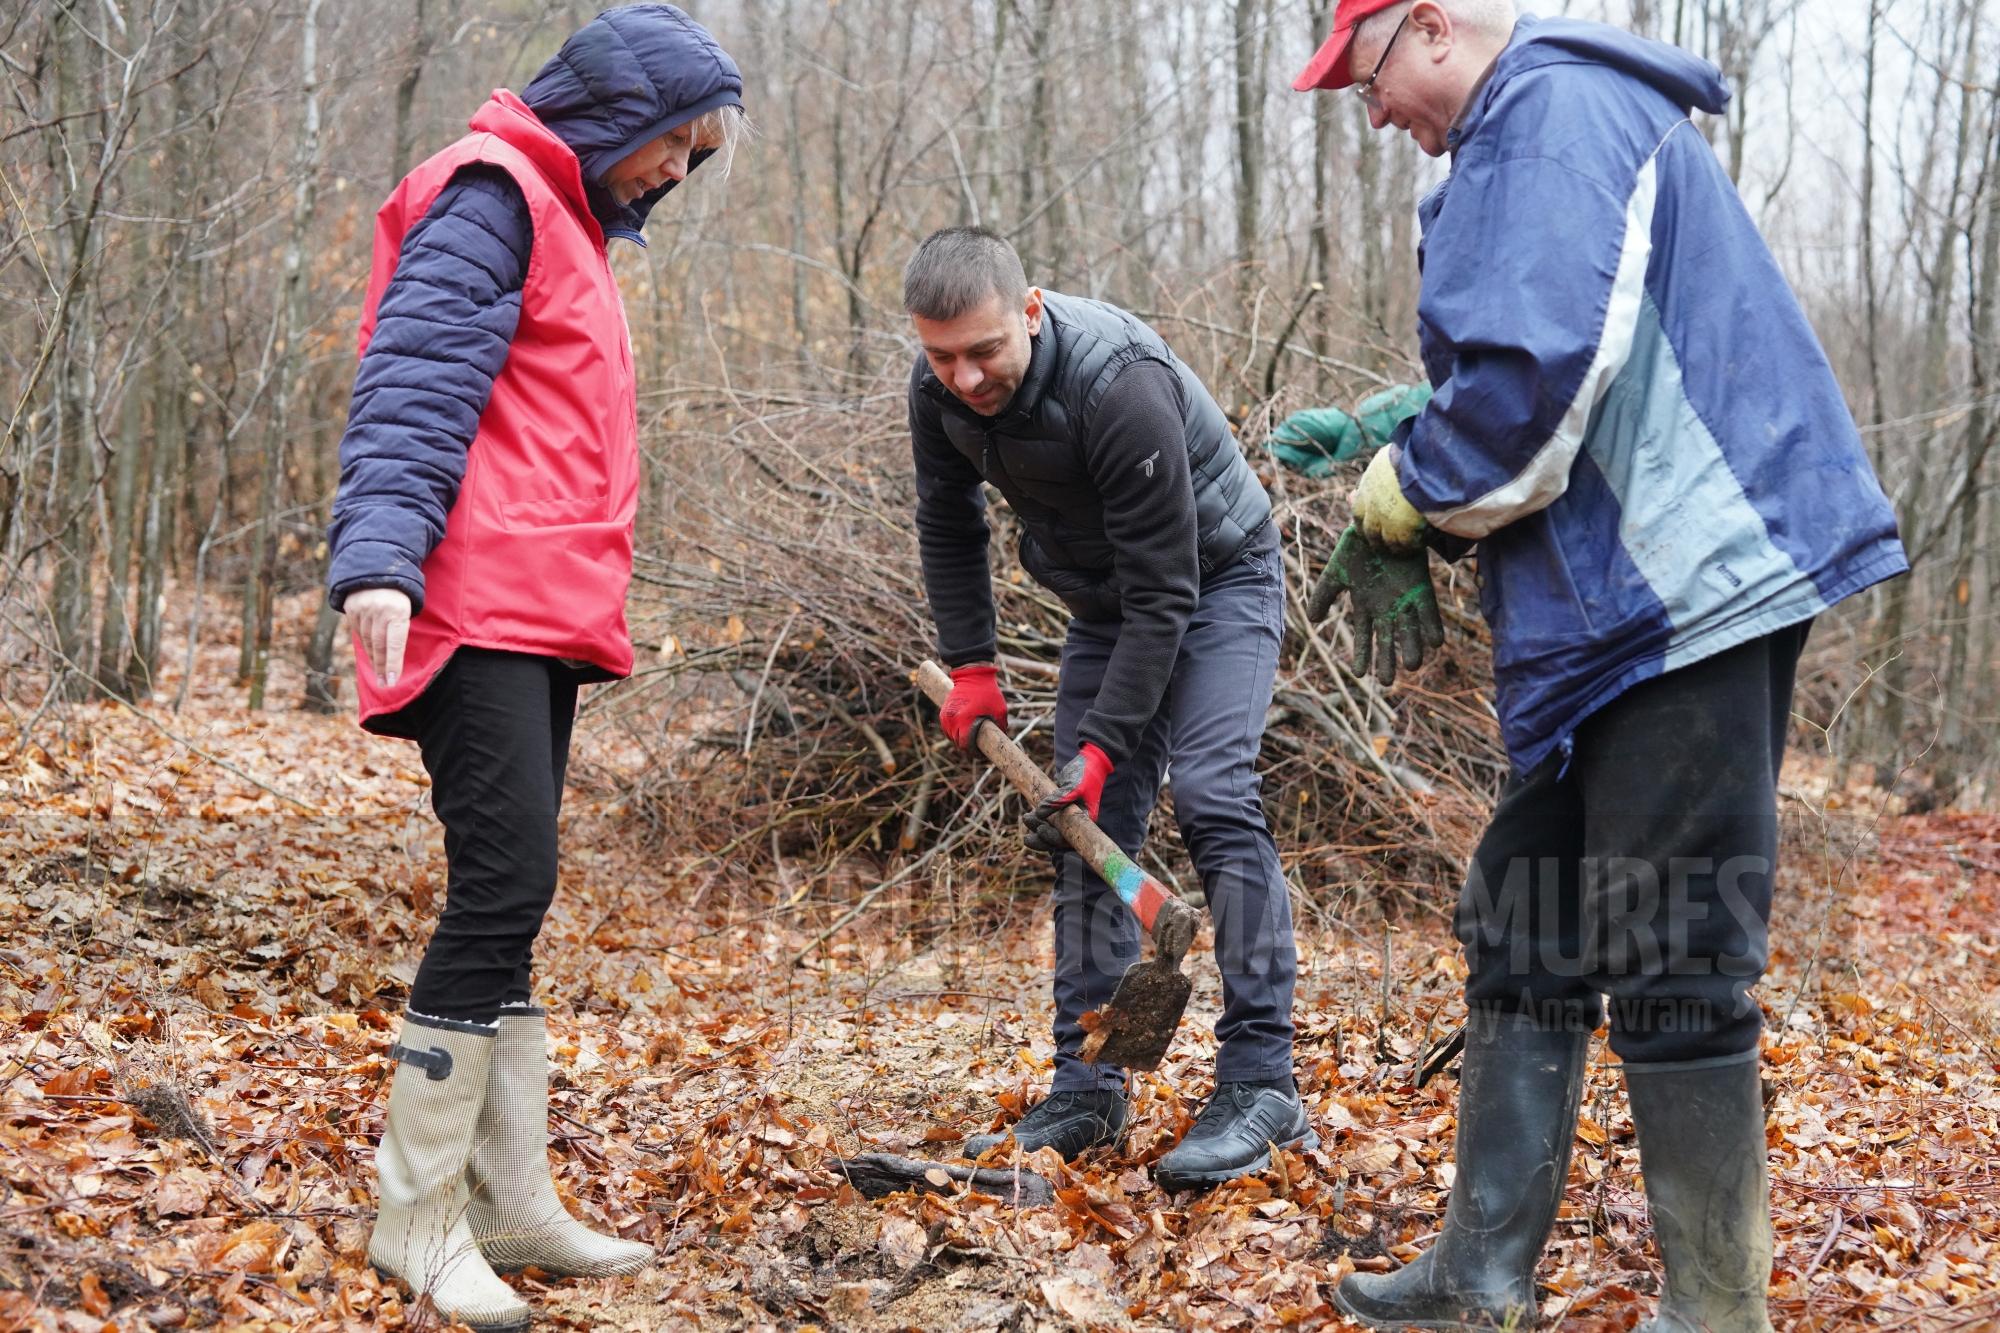 Reprezentanții PSD Maramureș au plantat puieți de stejar în Băița